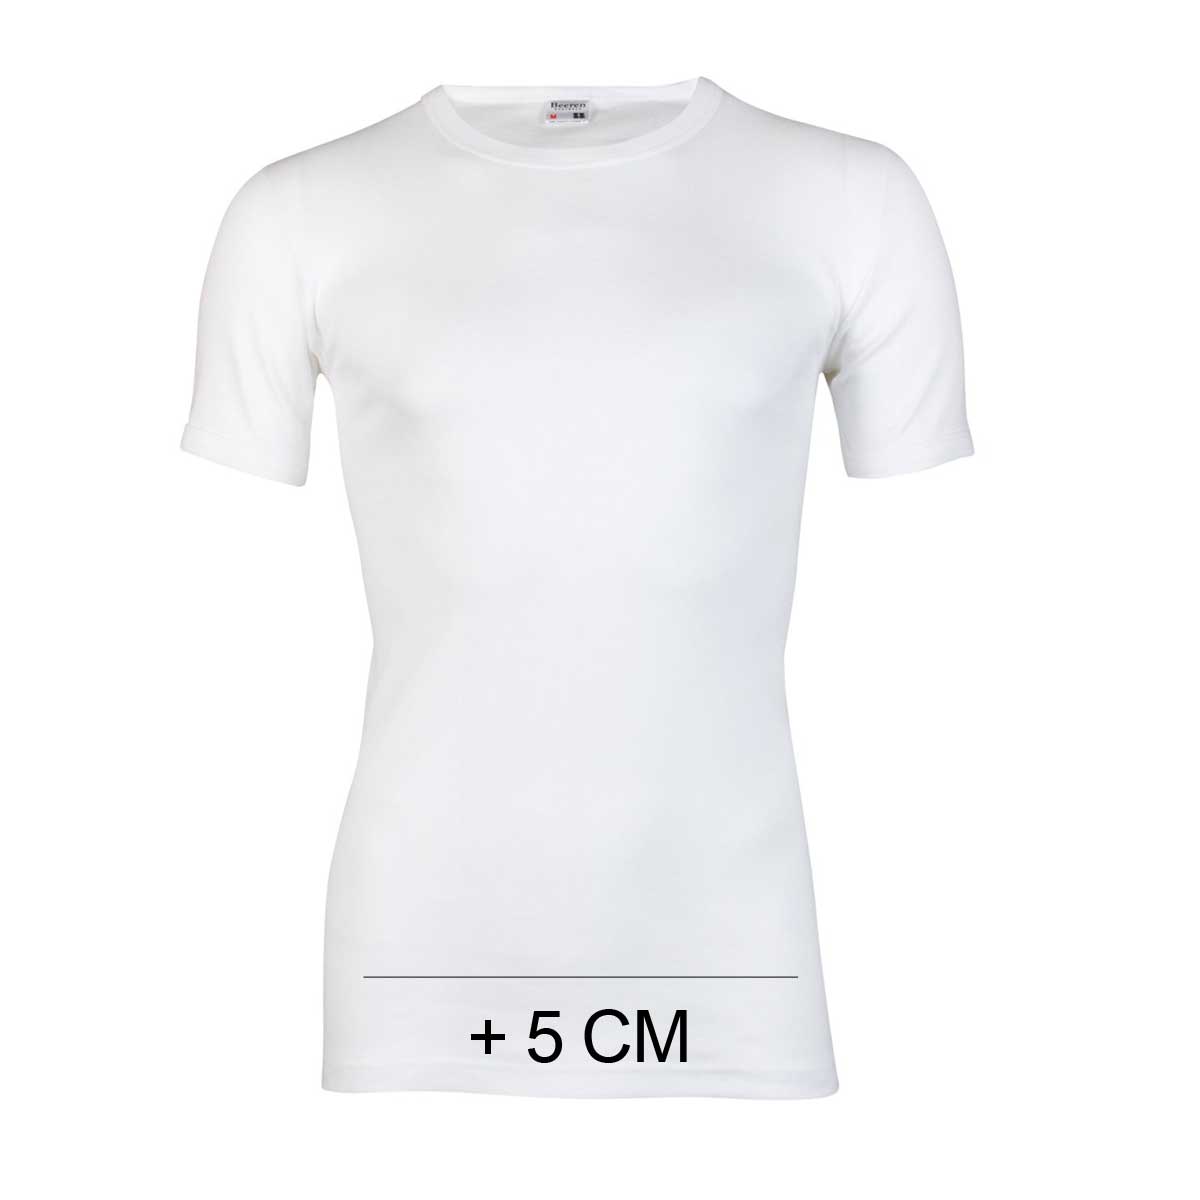 Middellandse Zee cel Waardeloos Beeren extra lange T-Shirt wit met ronde hals van 100% katoen